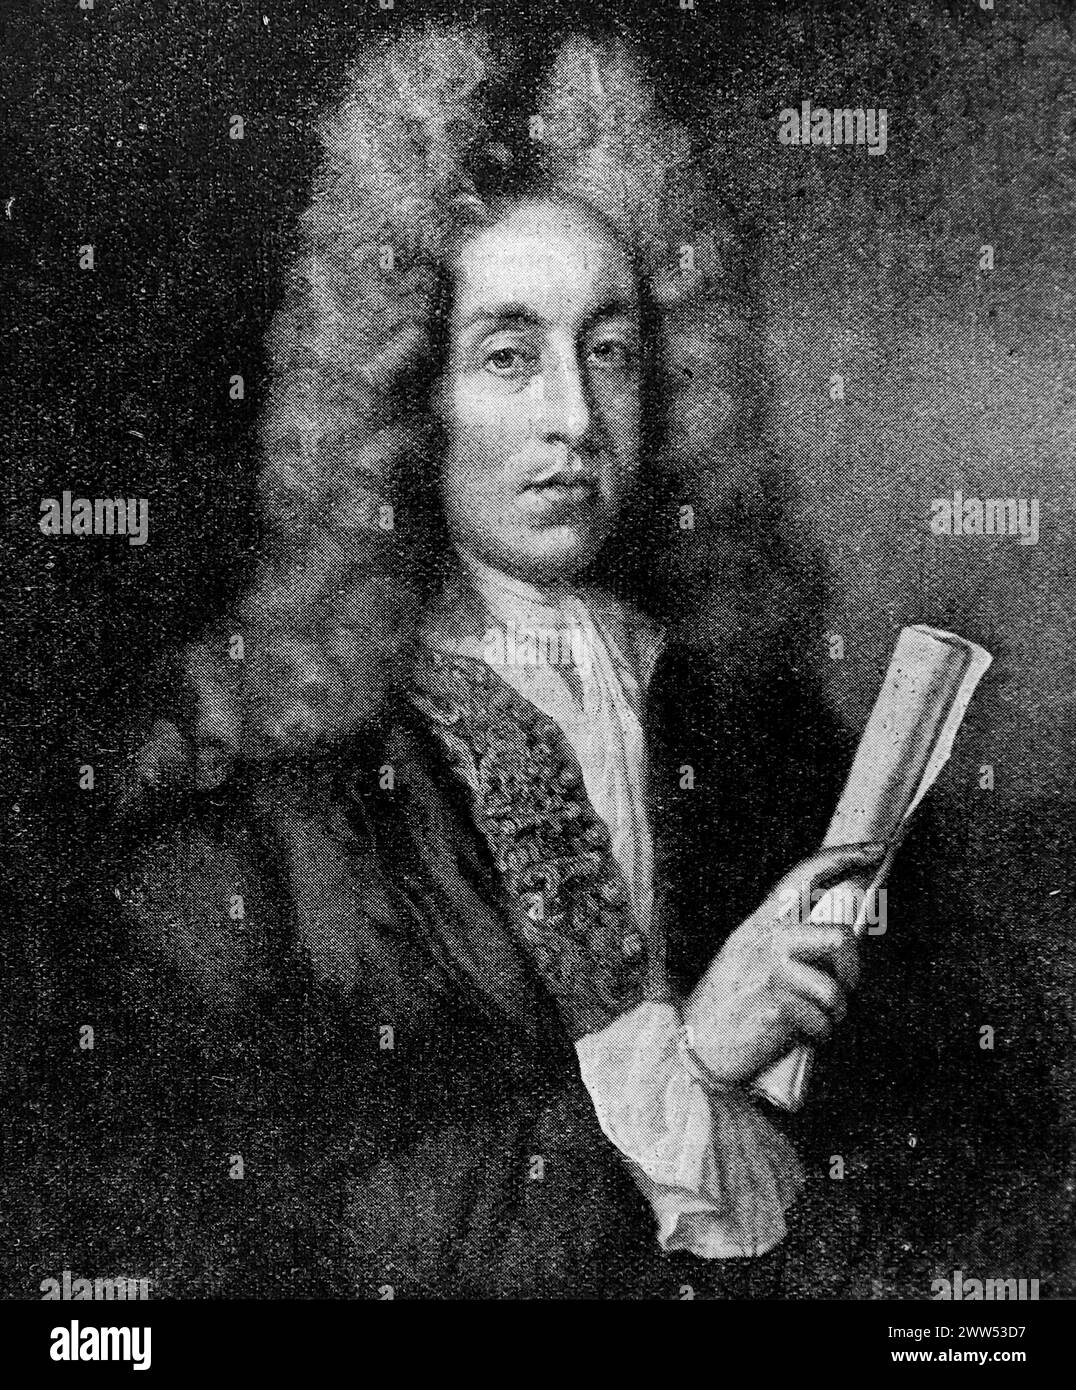 Portrait de Henry Purcell, pionnier de l'opéra anglais, d'après une peinture non attribuée. Noir et blanc. Photographie tirée d'un magazine initialement publié en 1898. Banque D'Images